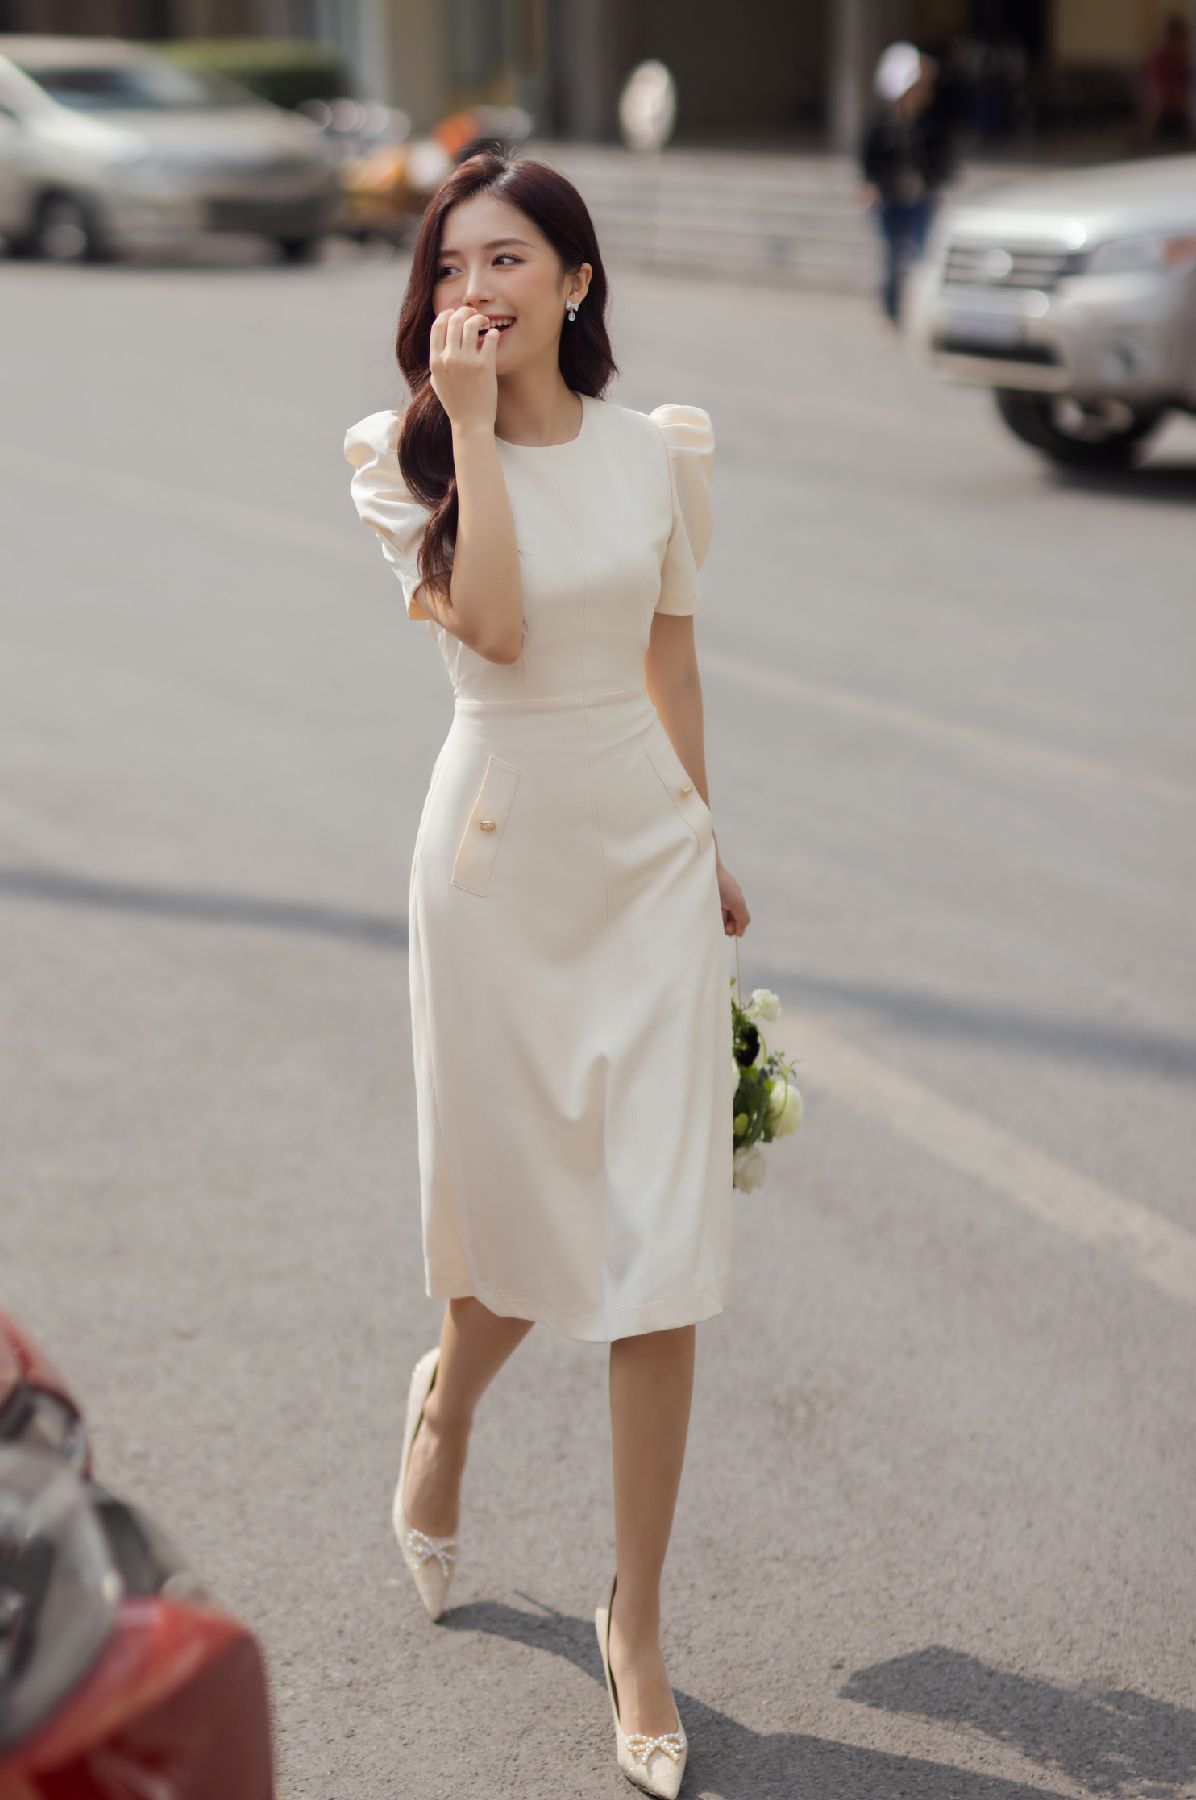 TOP 11 mẫu váy maxi đi biển cho người béo hóa “Mi nhon”